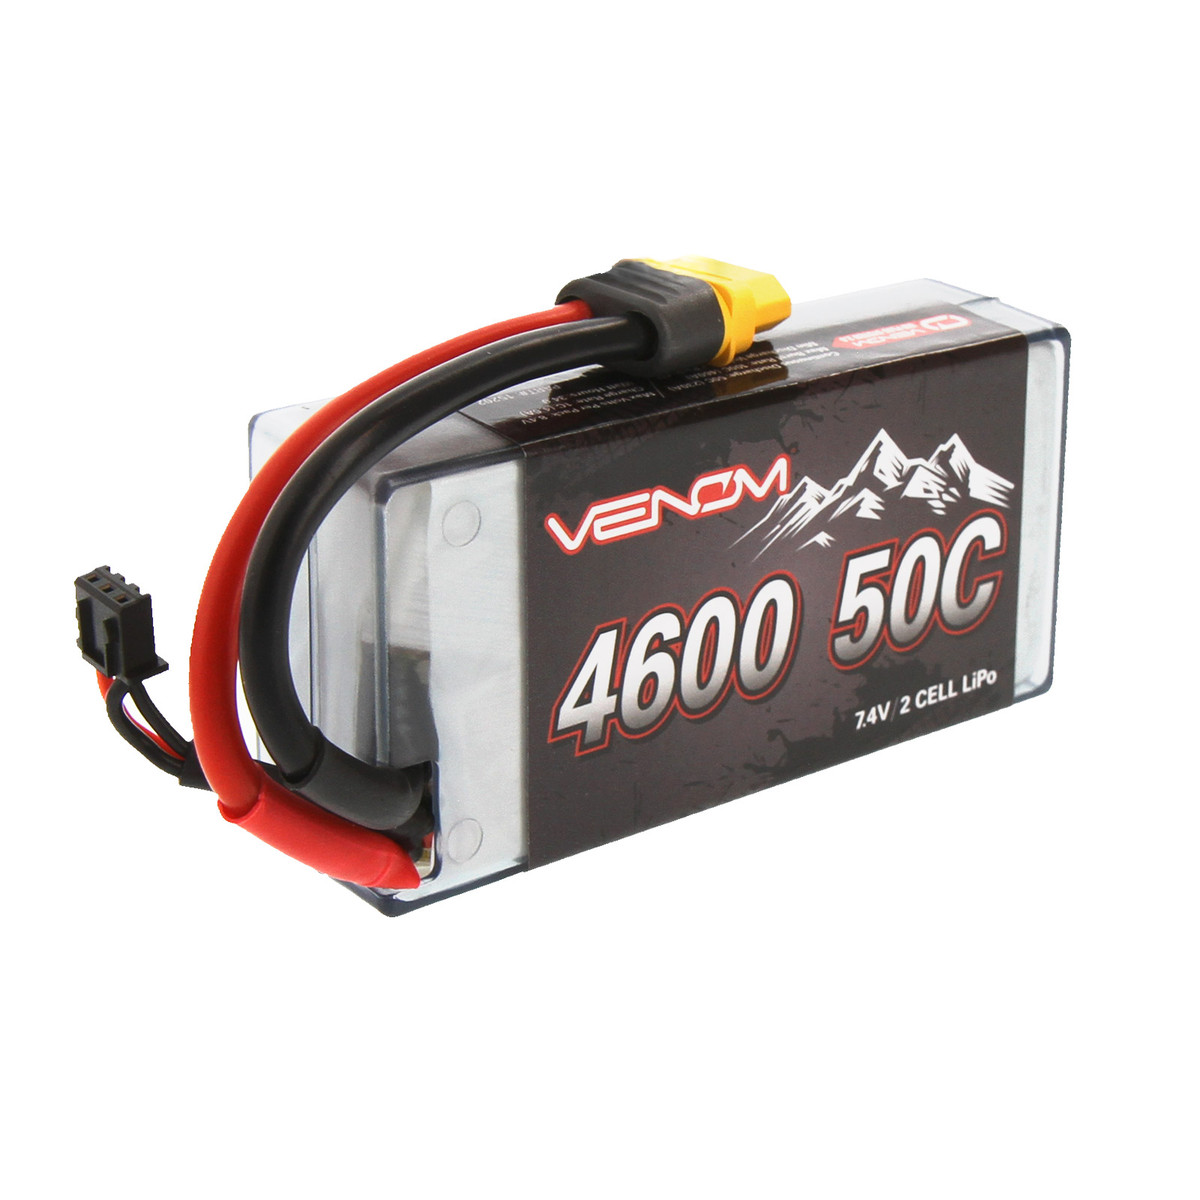 2S lipo Battery 7.4v 50c 4600mah Shorty Lipo Hardcase RC Batteries with